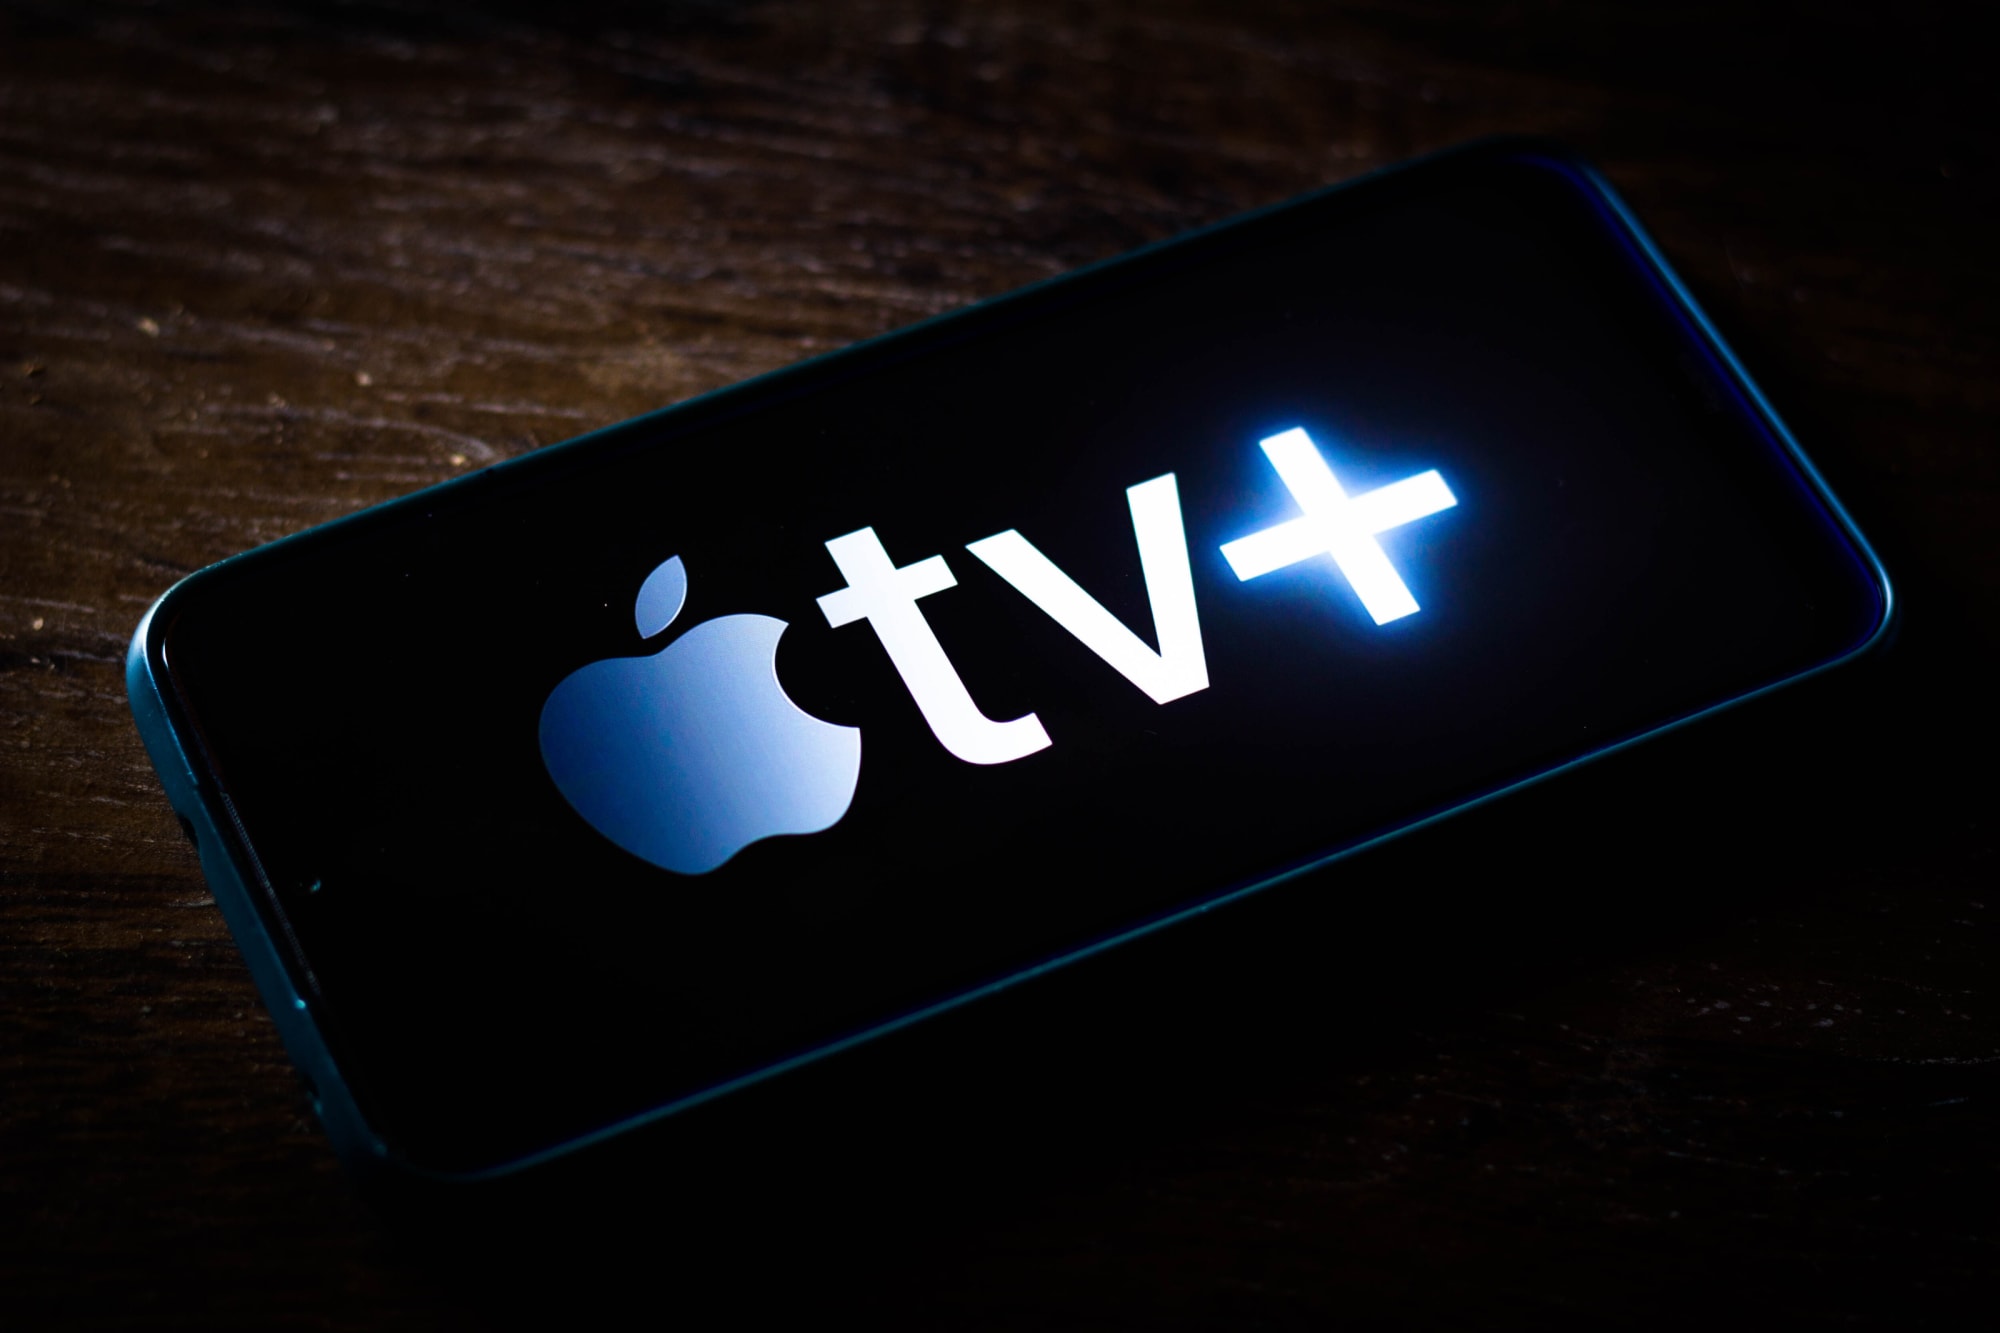 Langt væk Certifikat Gå til kredsløbet 5 Apple TV+ movies and shows coming in January 2022